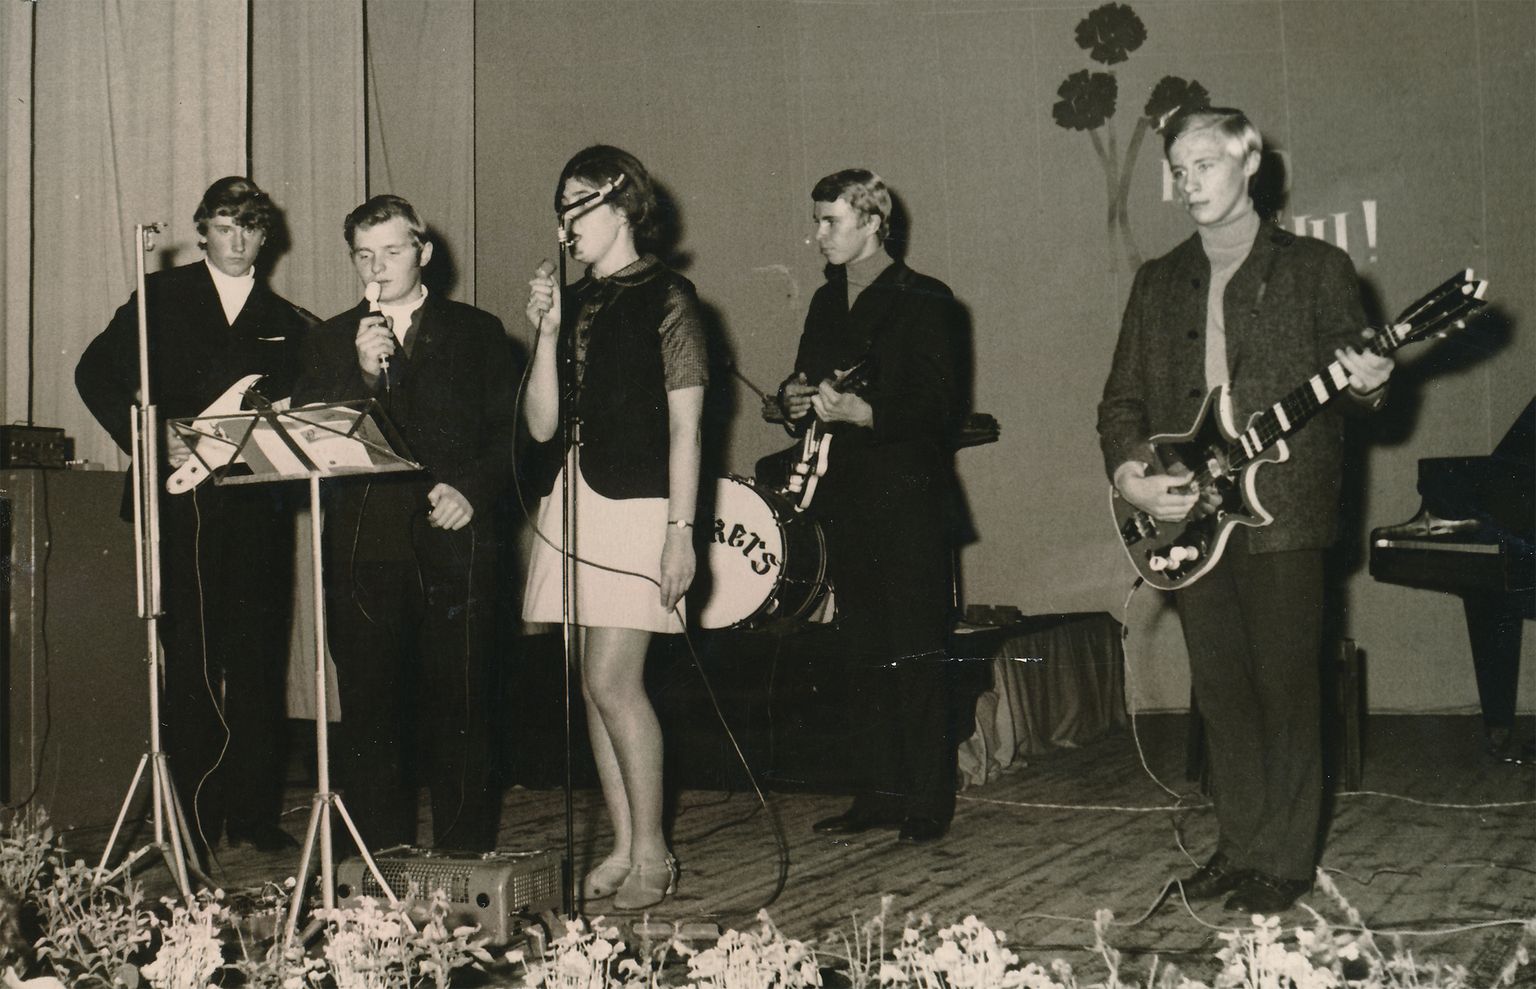 ALGUS: Wickersi üks esimesi etteasteid Orissaare kultuurimaja laval 1969. aasta alguses. (Vasakult) Ants Leis, Rein Kelder, Luule Kivi, Toomas Naaber, Vello Põldemaa. Taga trummidel Anto Õng. Põldemaa mängib isetehtud kitarril.